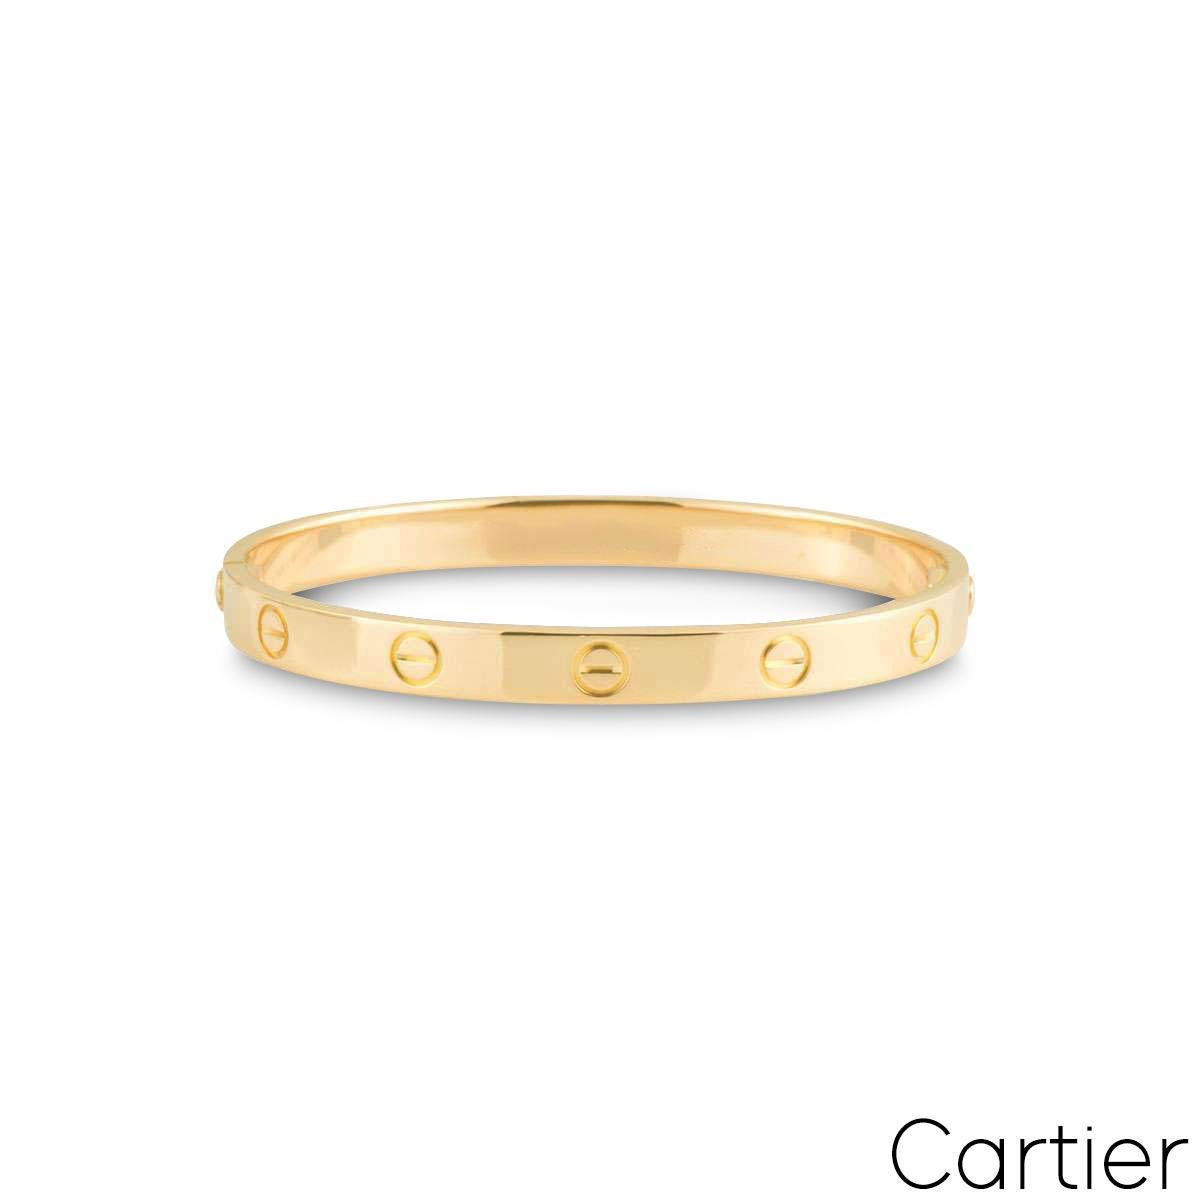 Ein charakteristisches Cartier-Armband aus 18 Karat Gelbgold aus der Collection'S Love. Das Armband weist das ikonische Schraubenmotiv am äußeren Rand auf und ist mit einer neuartigen Verschraubung versehen. Dieses Armband hat ein Bruttogewicht von